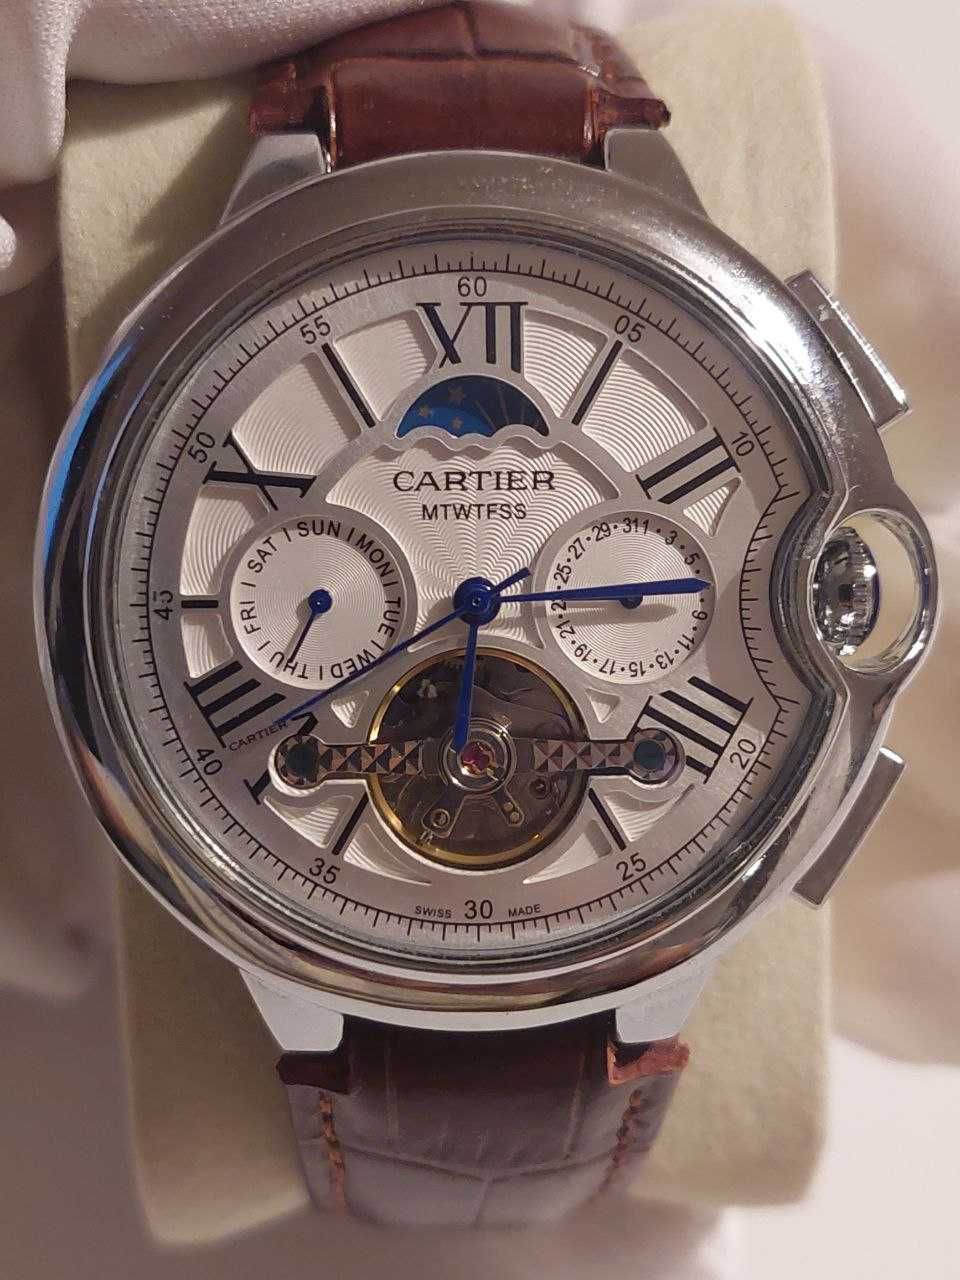 Zegarek Cartier MTWTFSS white